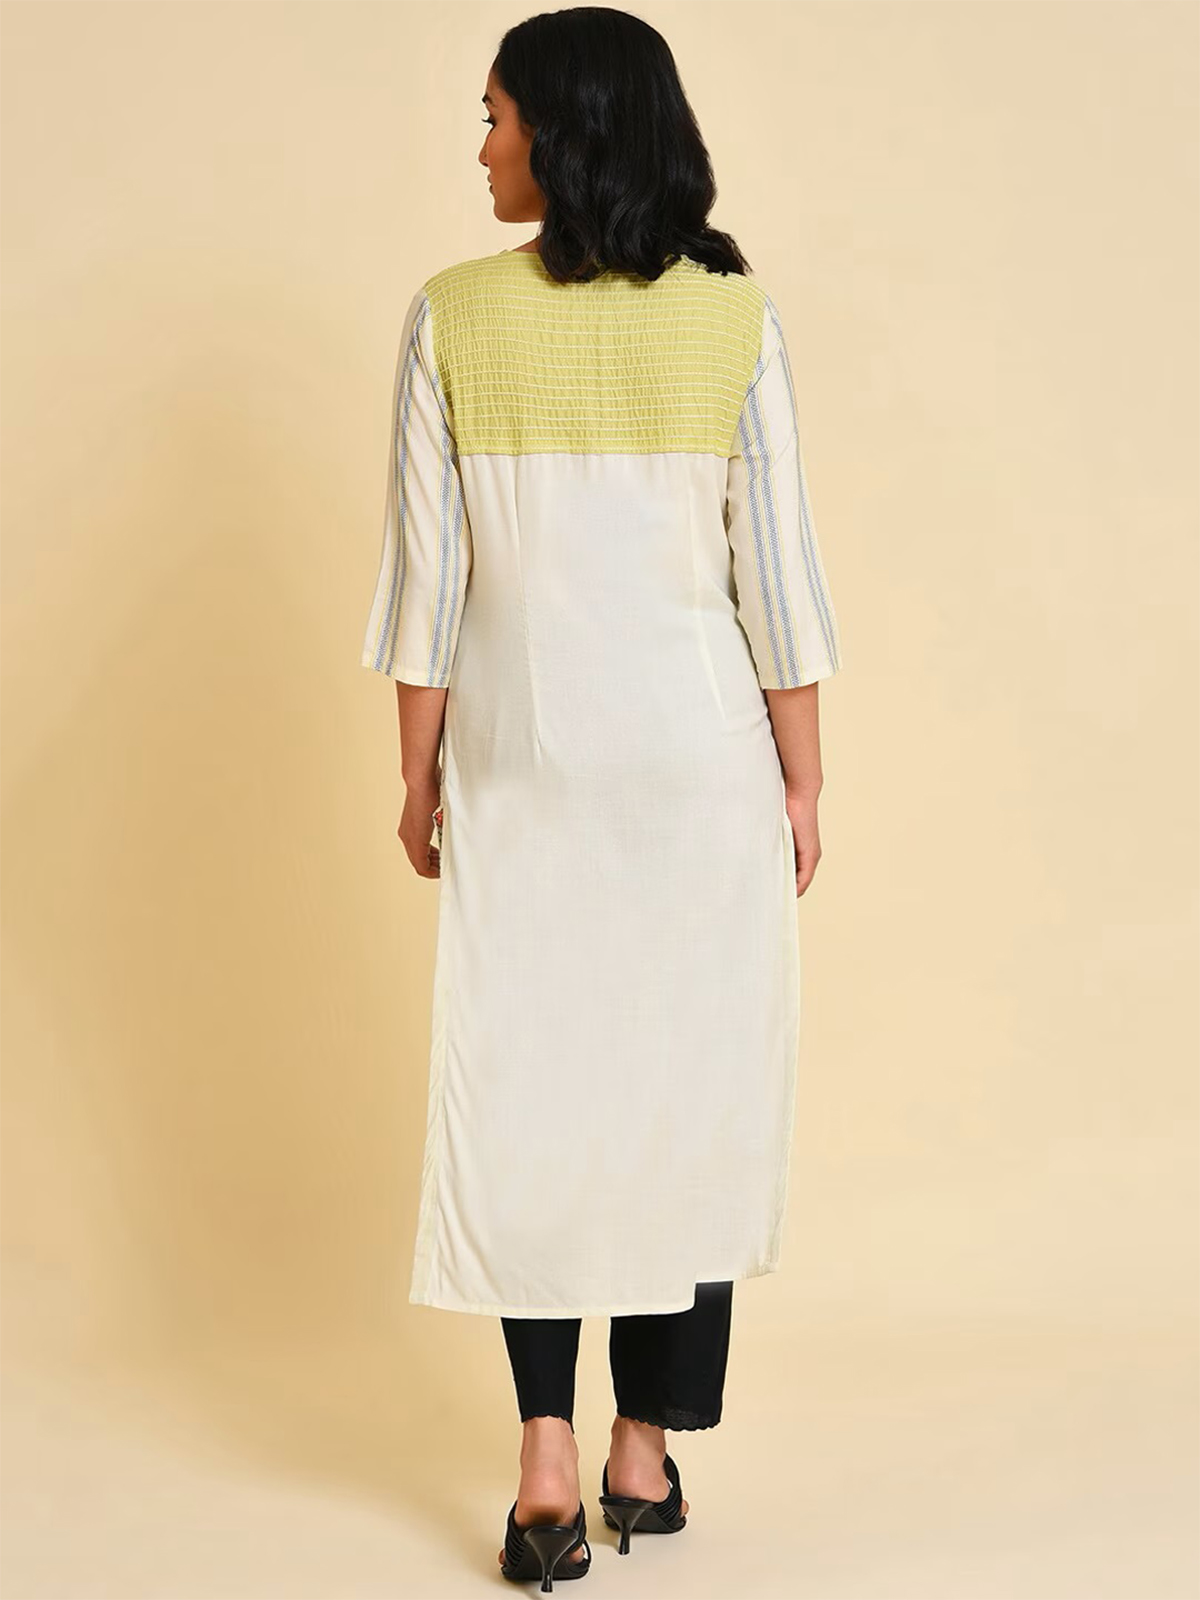 Kiara' Off White Plain Cotton Frock Style kurti – The Yellow Bells